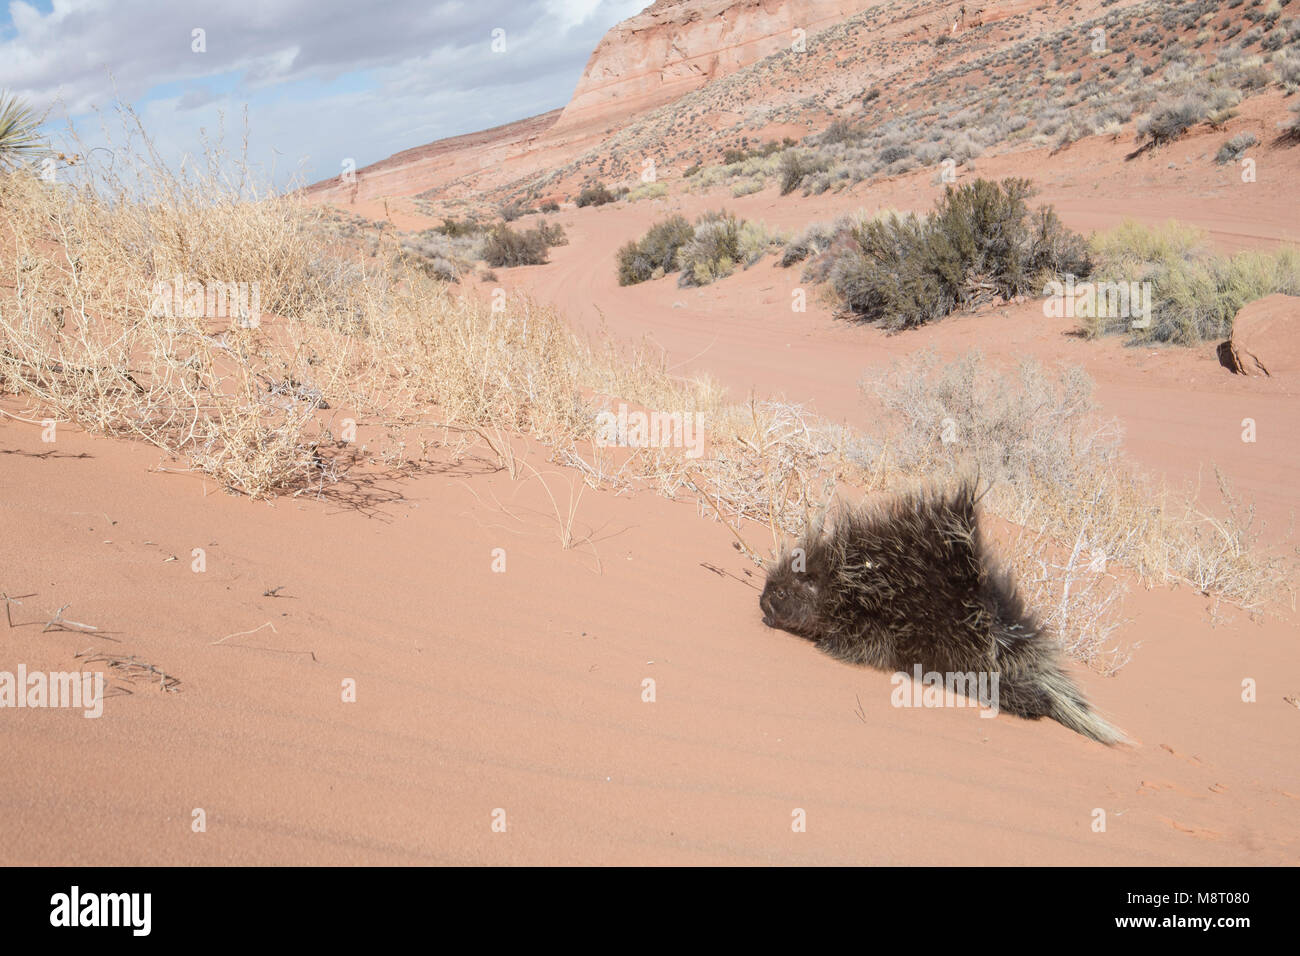 Un North American porcupine cammina su una duna di sabbia nel deserto. Foto Stock